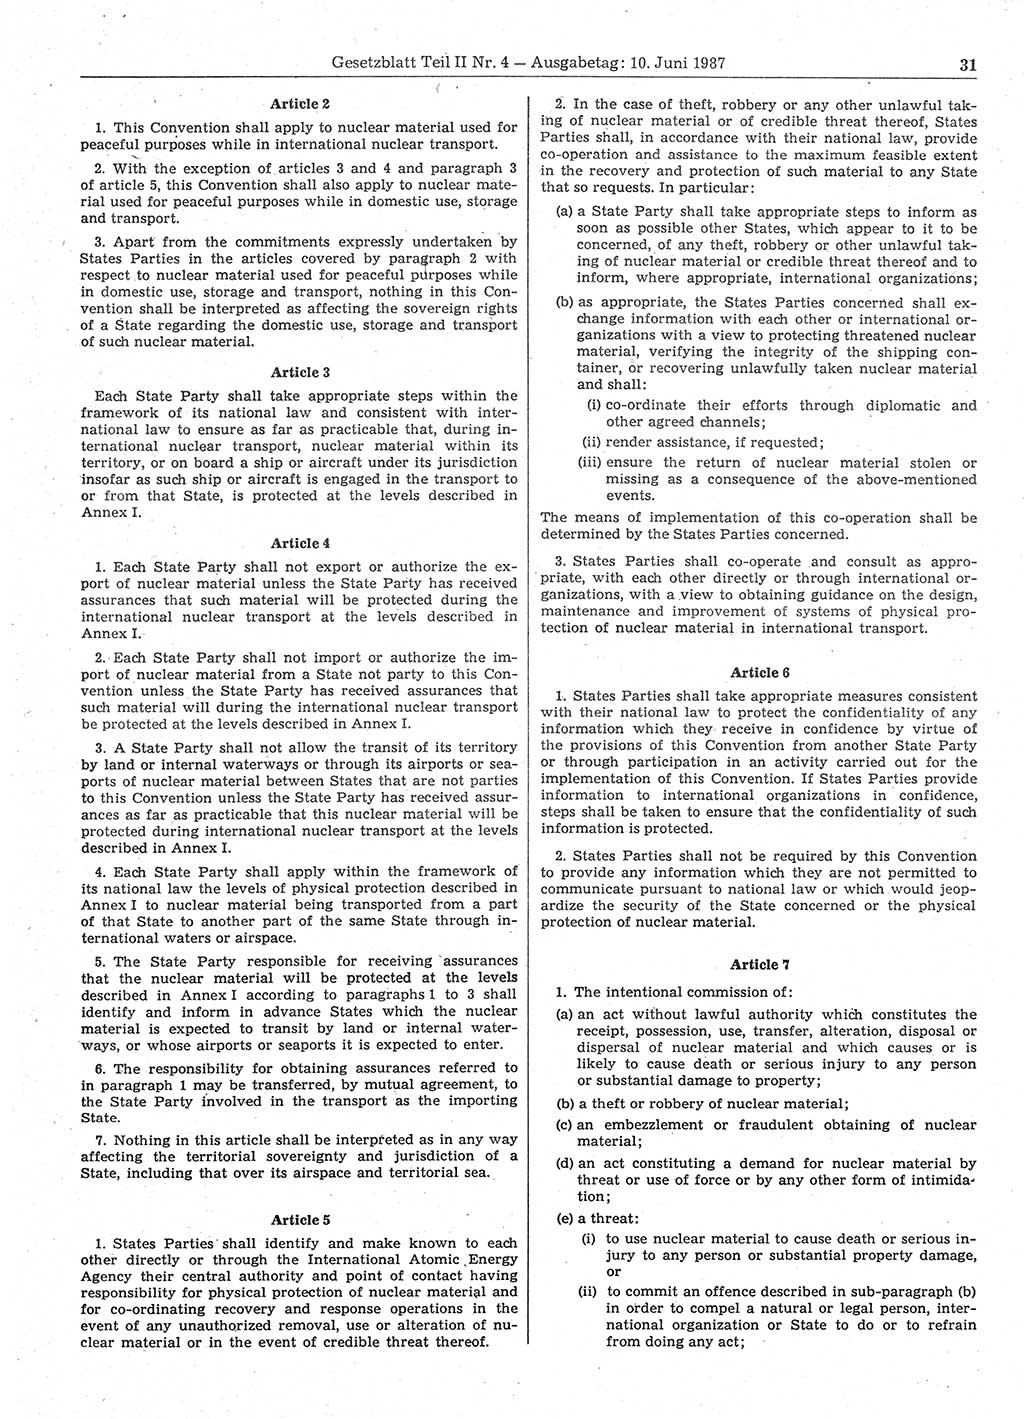 Gesetzblatt (GBl.) der Deutschen Demokratischen Republik (DDR) Teil ⅠⅠ 1987, Seite 31 (GBl. DDR ⅠⅠ 1987, S. 31)